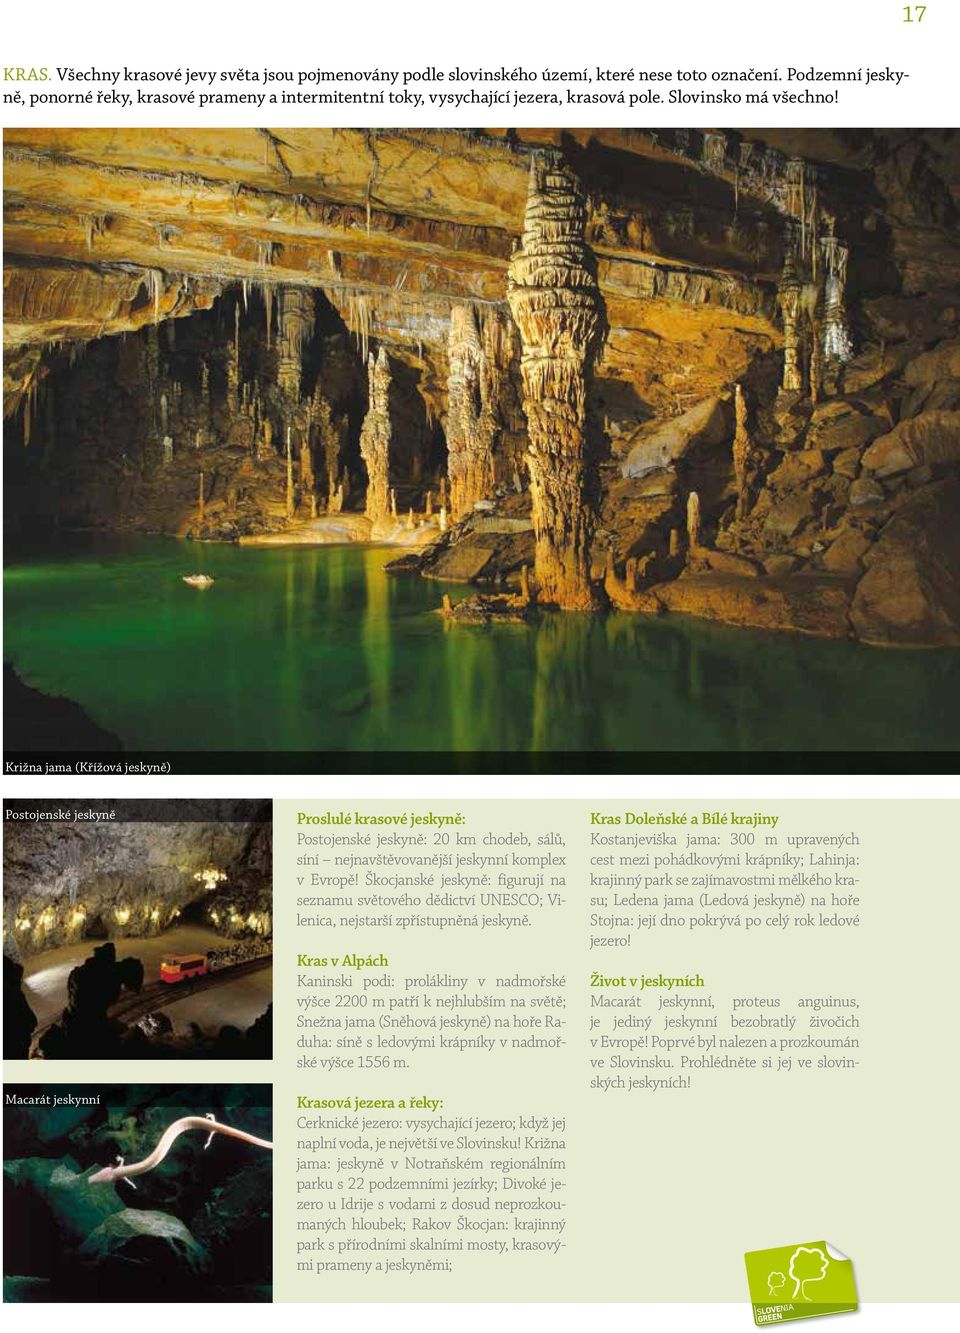 Križna jama (Křížová jeskyně) Postojenské jeskyně Macarát jeskynní Proslulé krasové jeskyně: Postojenské jeskyně: 20 km chodeb, sálů, síní nejnavštěvovanější jeskynní komplex v Evropě!